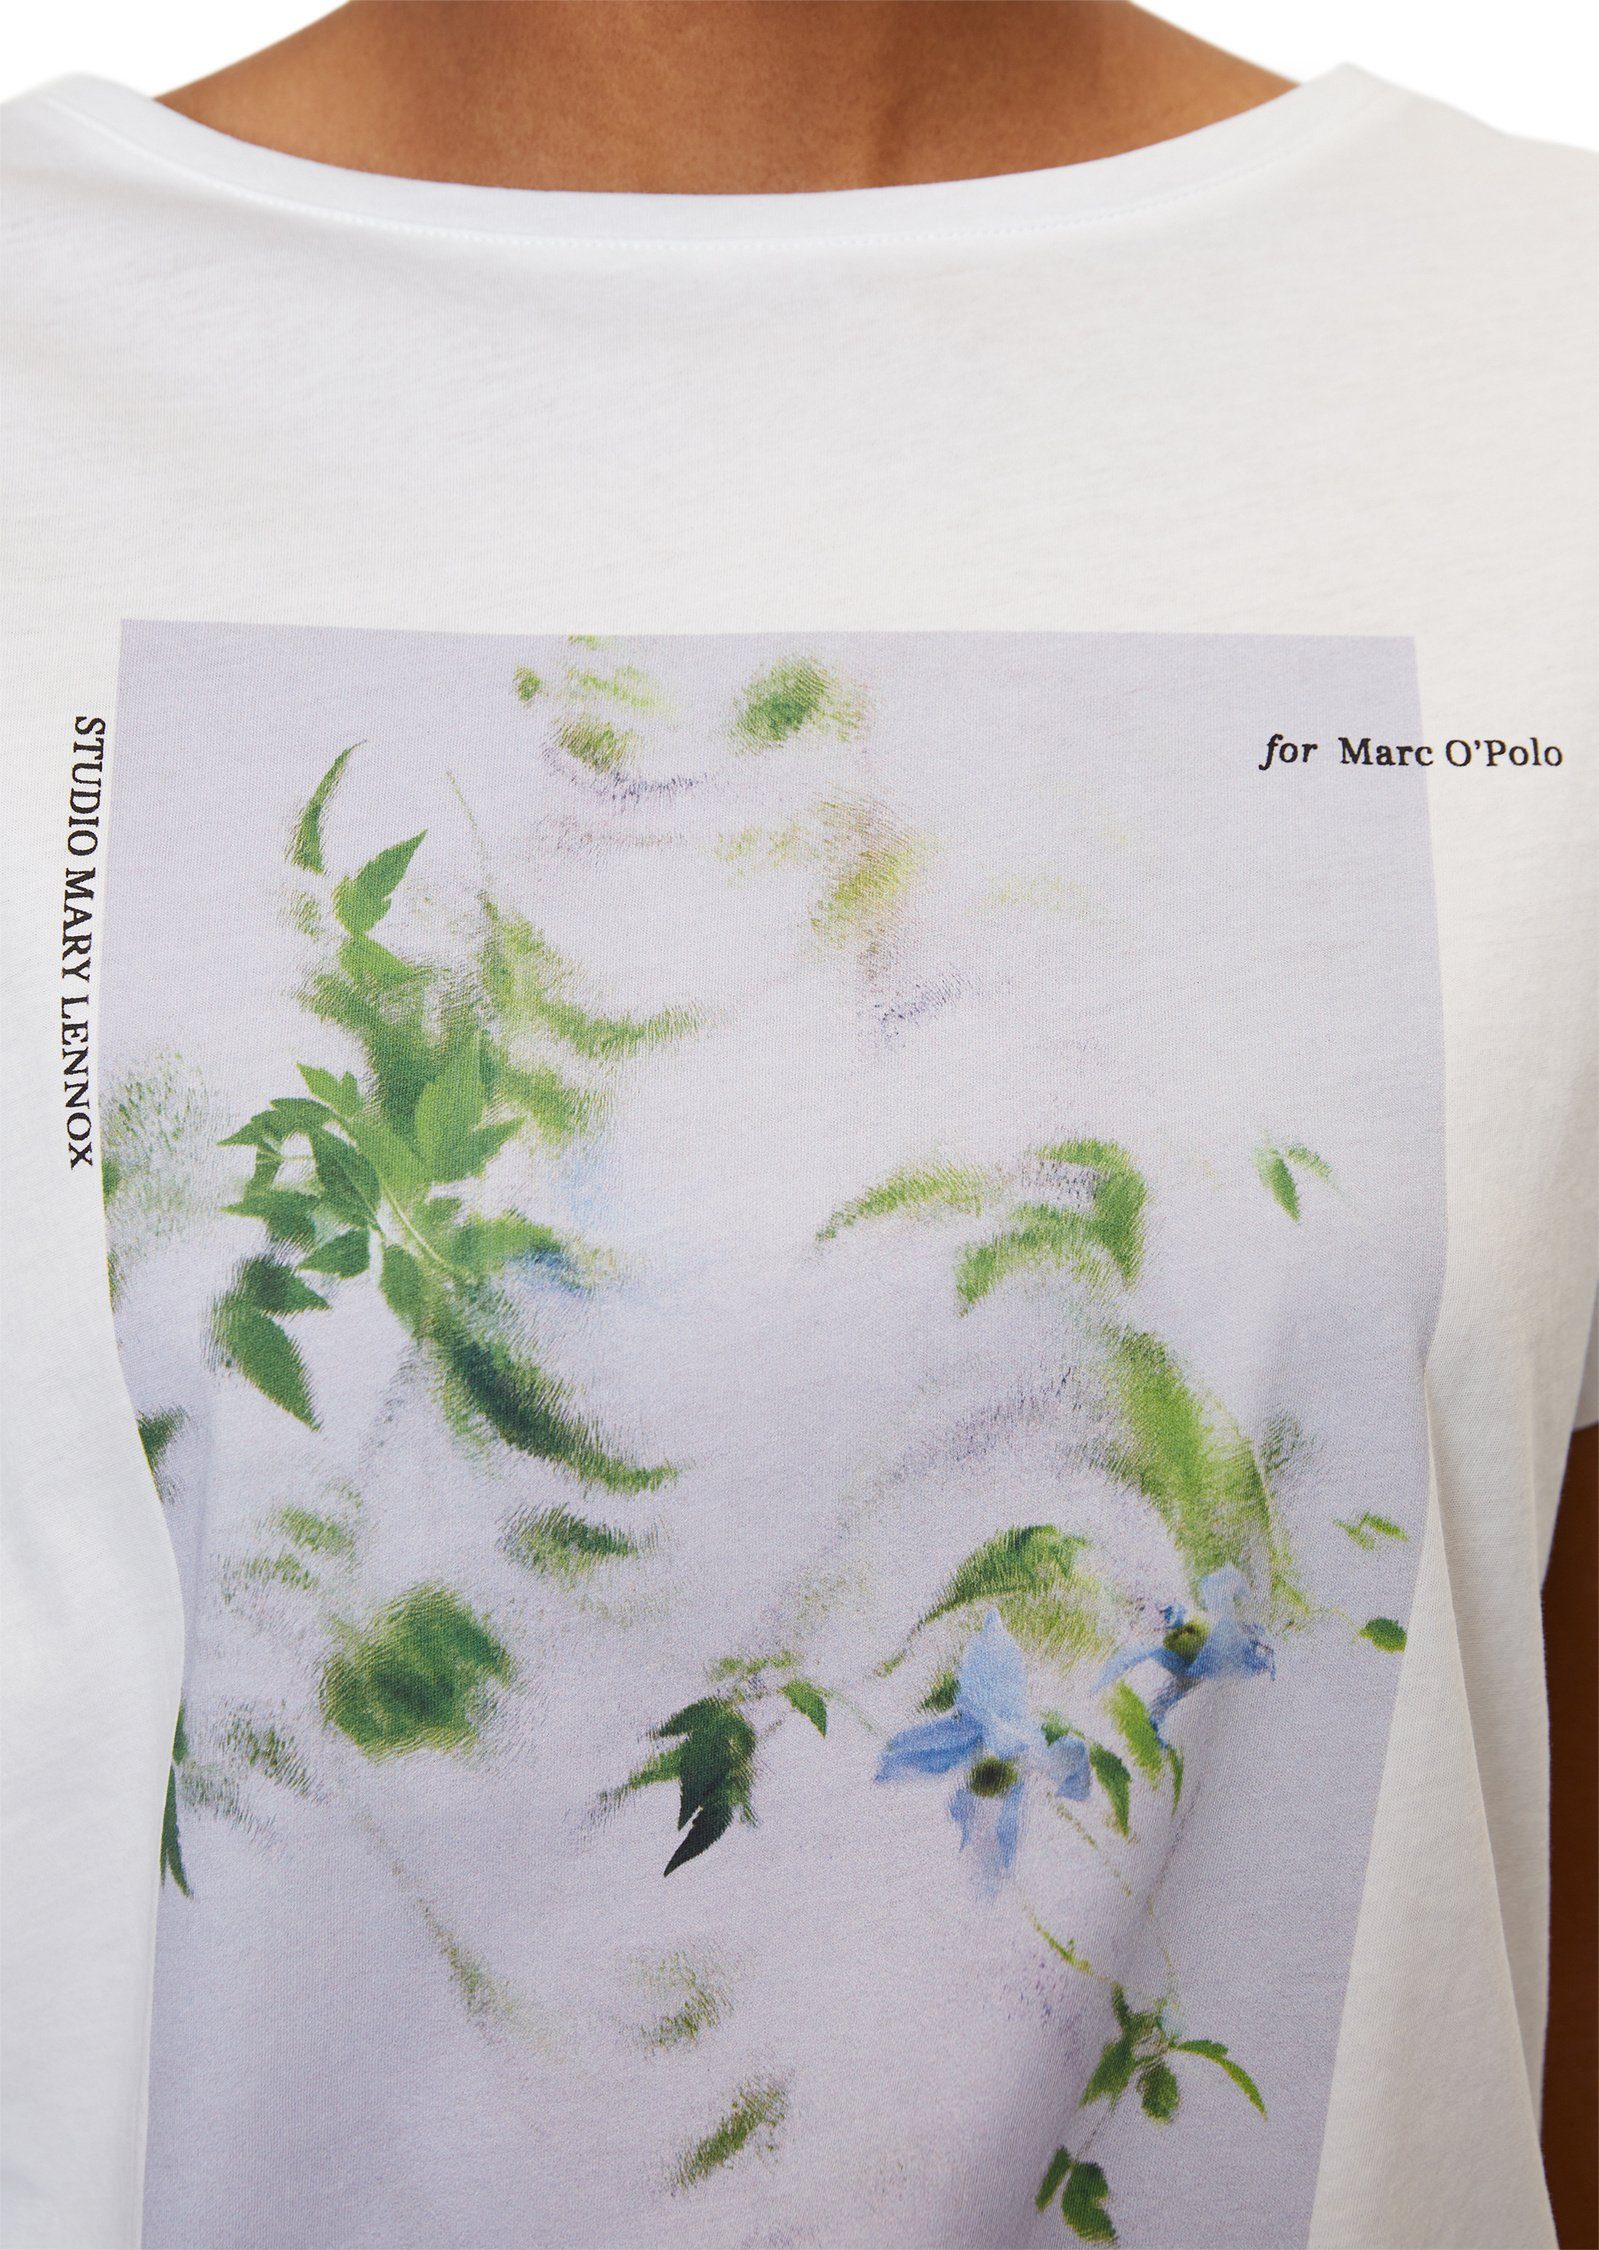 Marc O'Polo T-Shirt mit floralem weiß Foto-Print